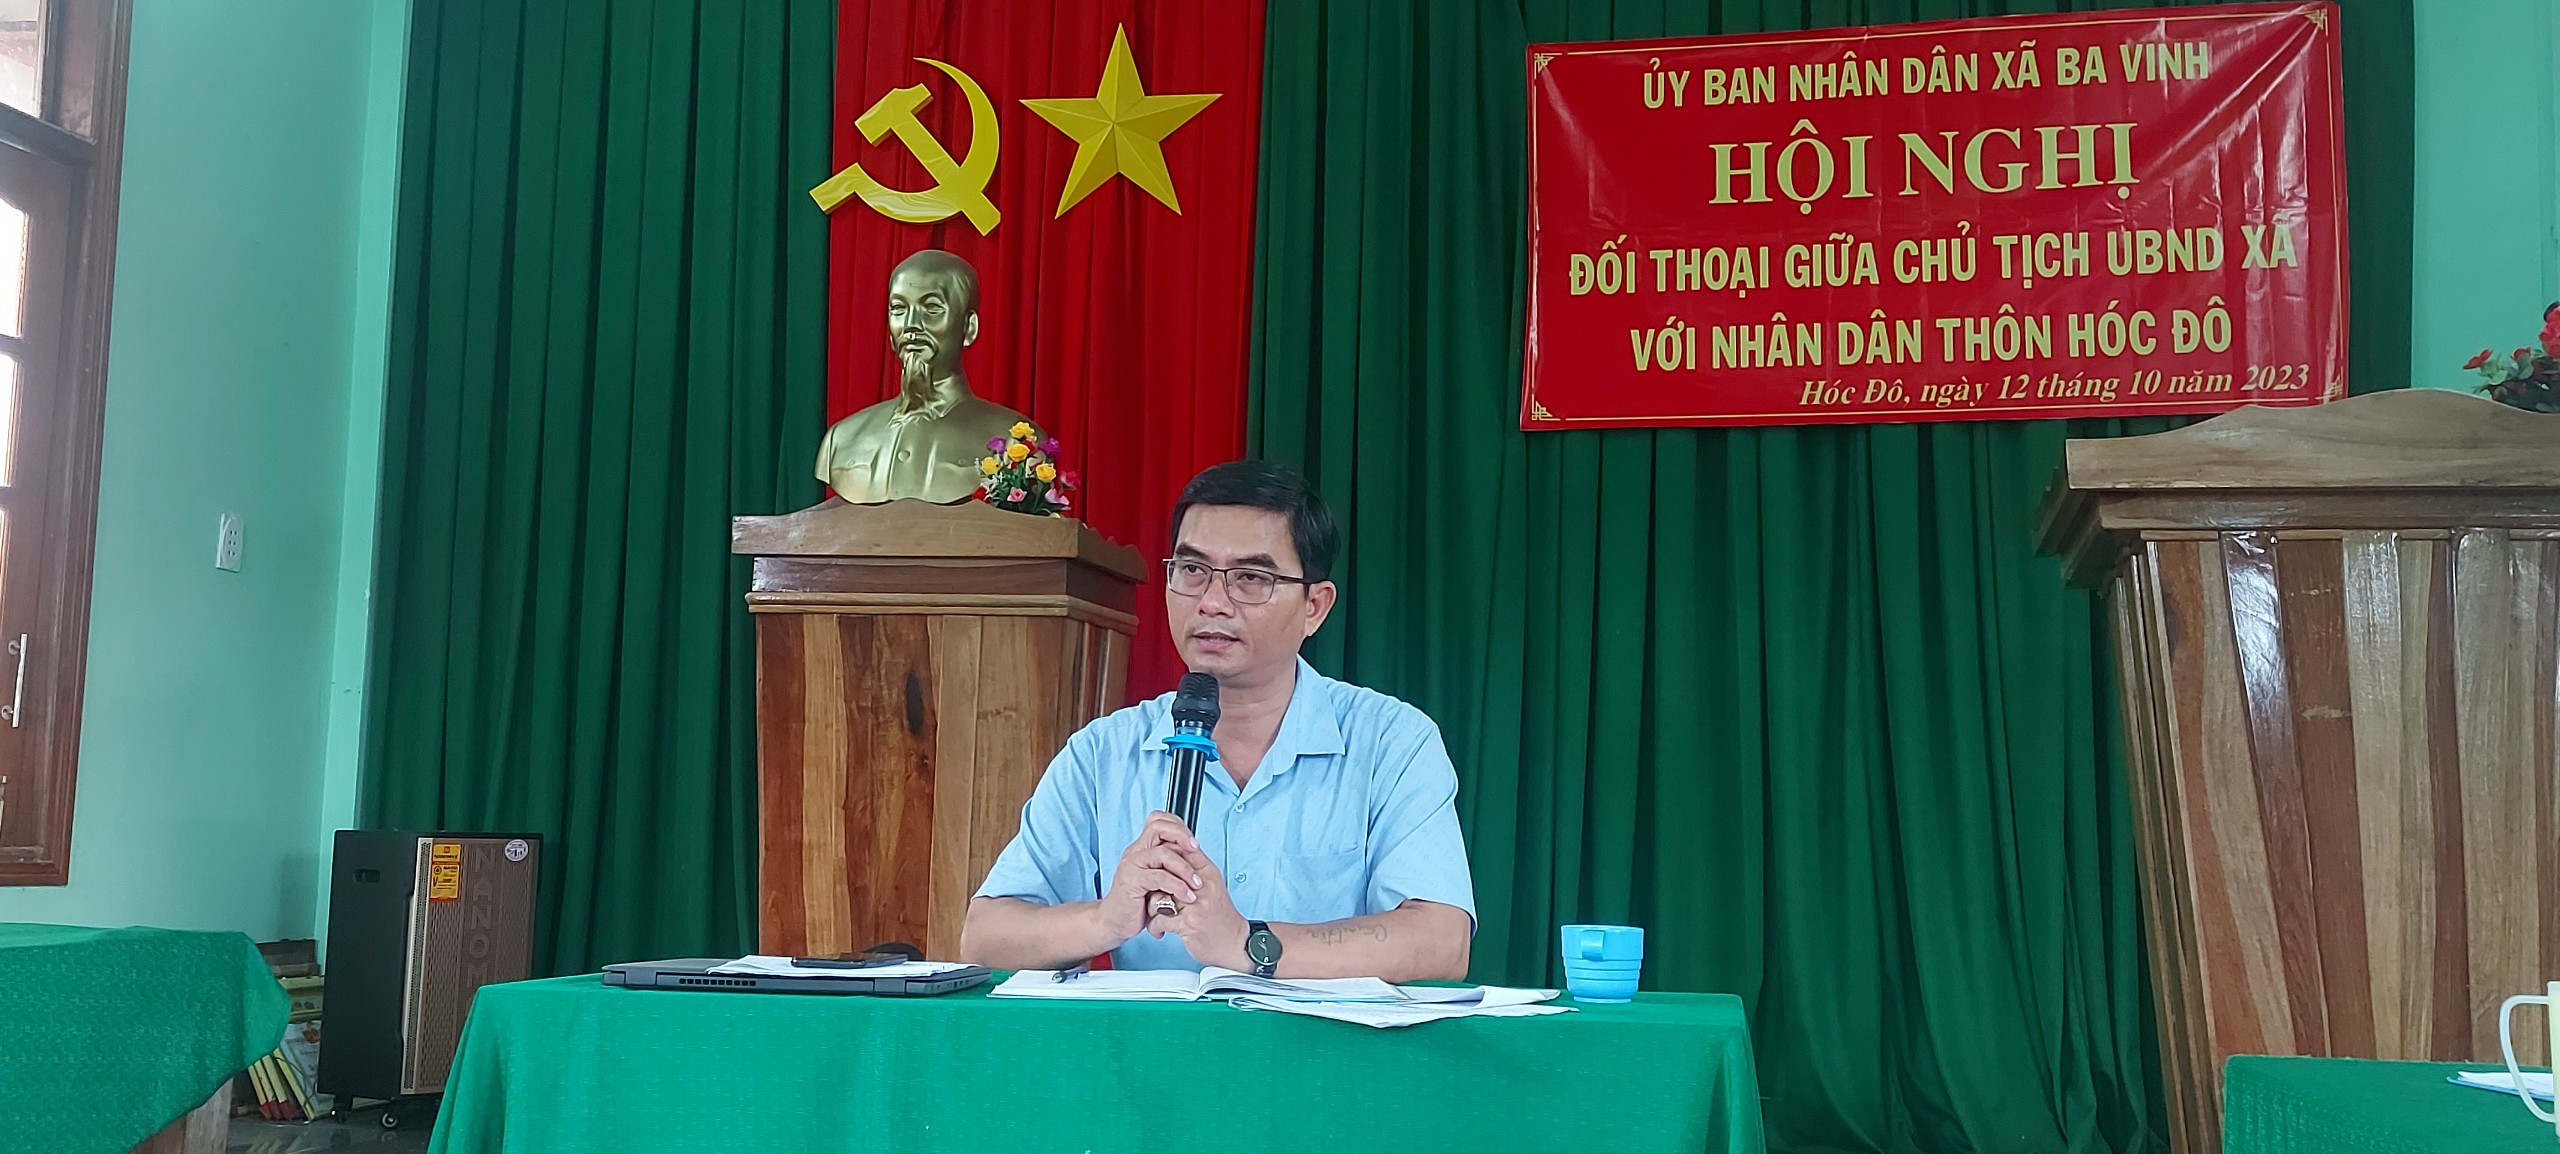 Hội nghị đối thoại giữa Chủ tịch UBND xã với nhân dân thôn Hóc Đô, xã Ba Vinh